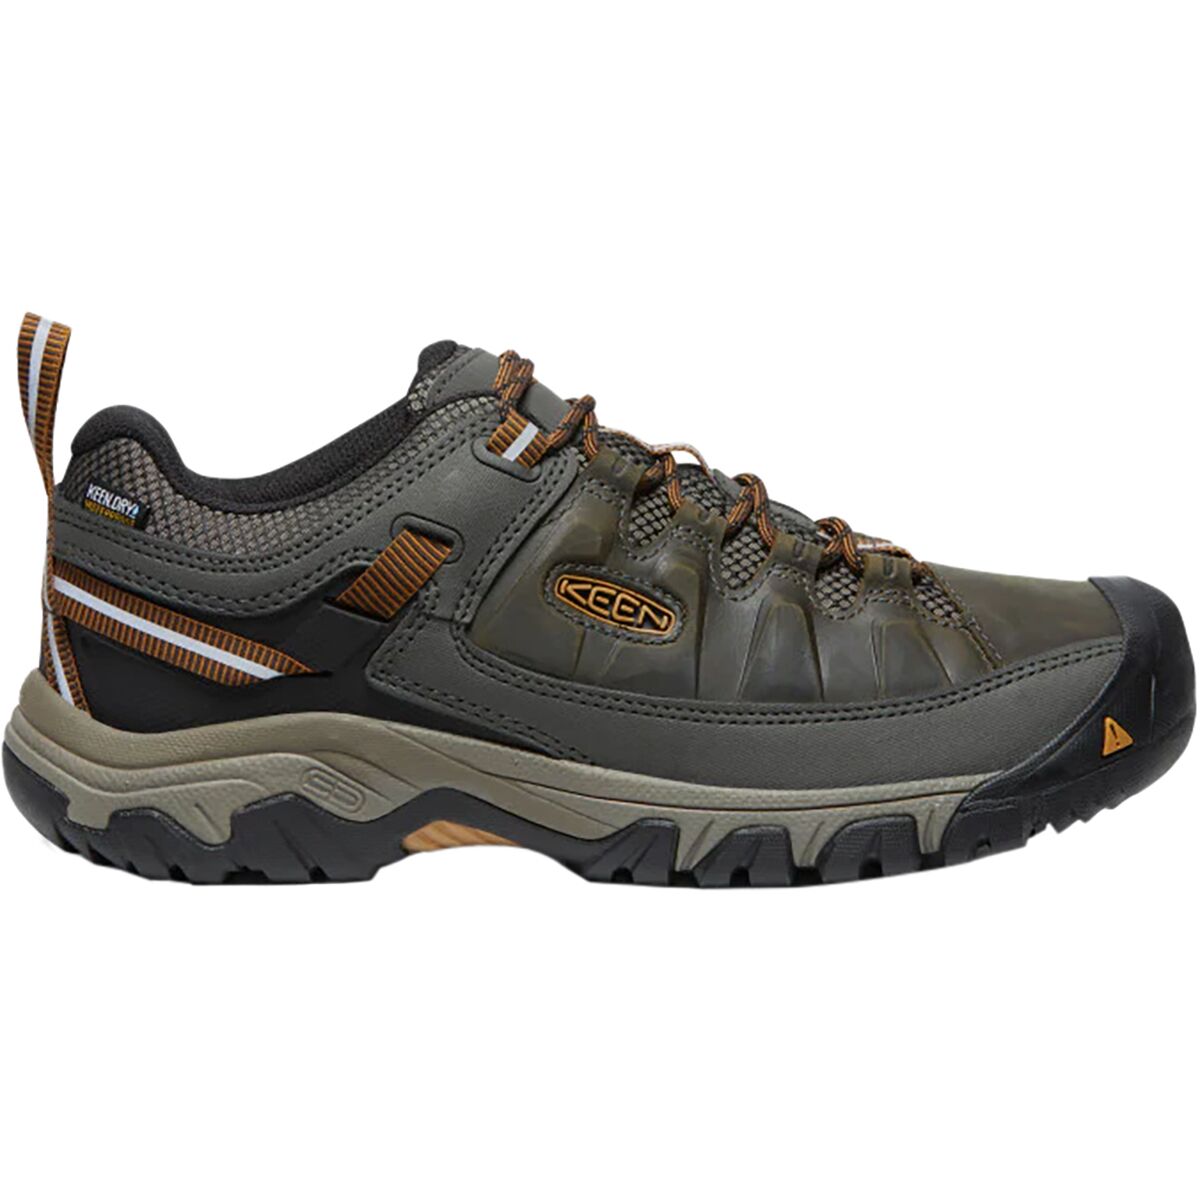 KEEN Targhee III Waterproof Leather Hiking Shoe - Men's